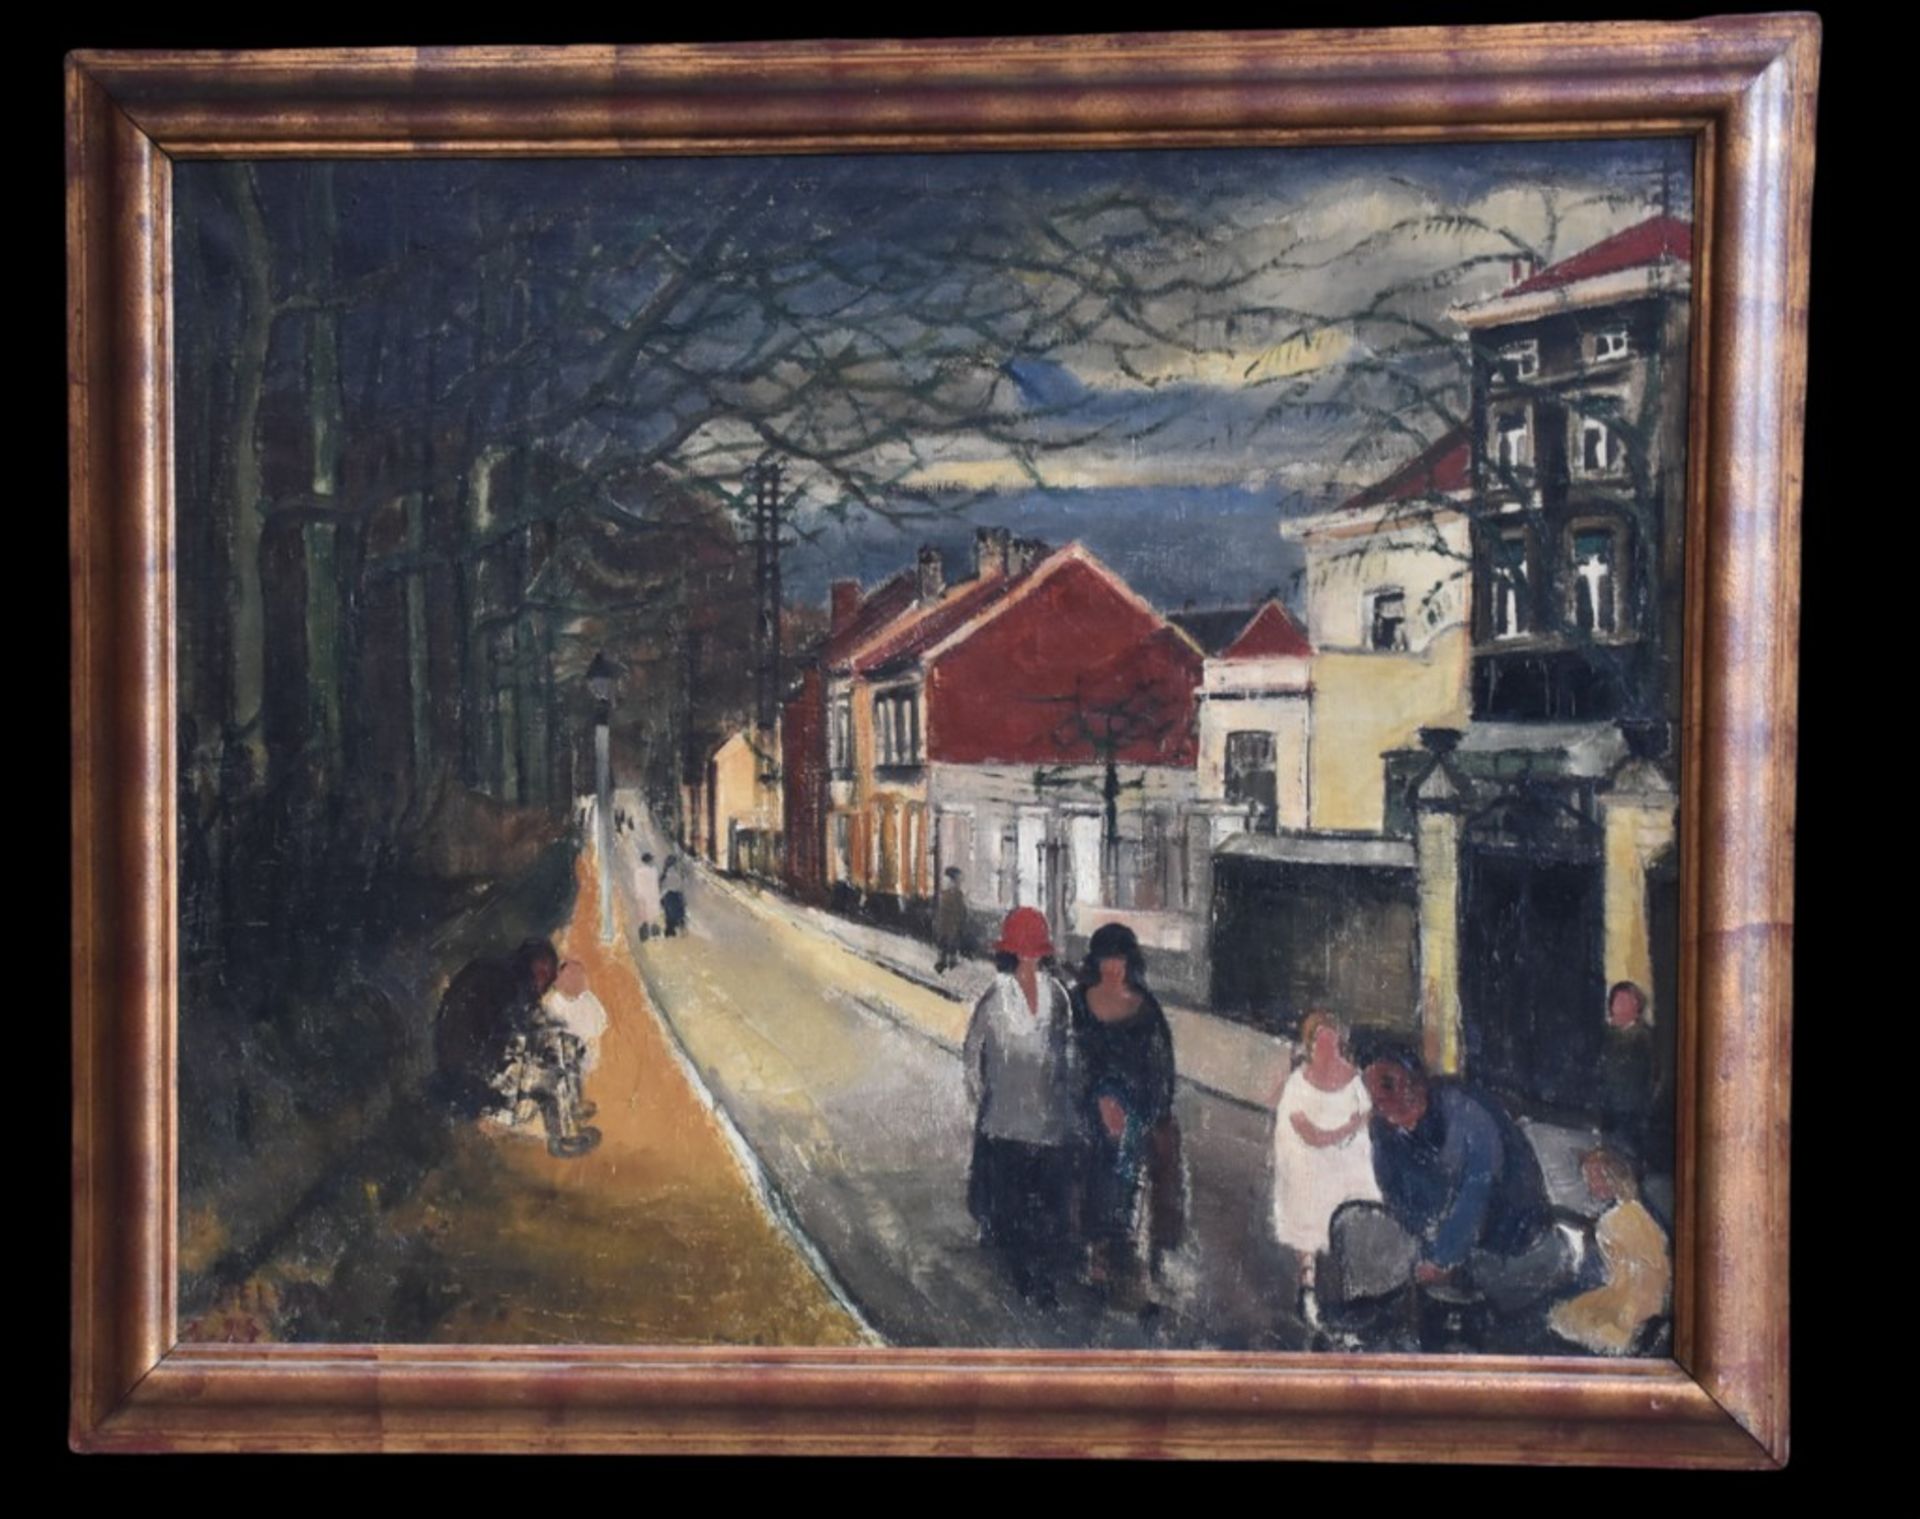 Paul DELVAUX (1897-1994). "Chaussée de Tervuren in Auderghem". Oil on canvas.